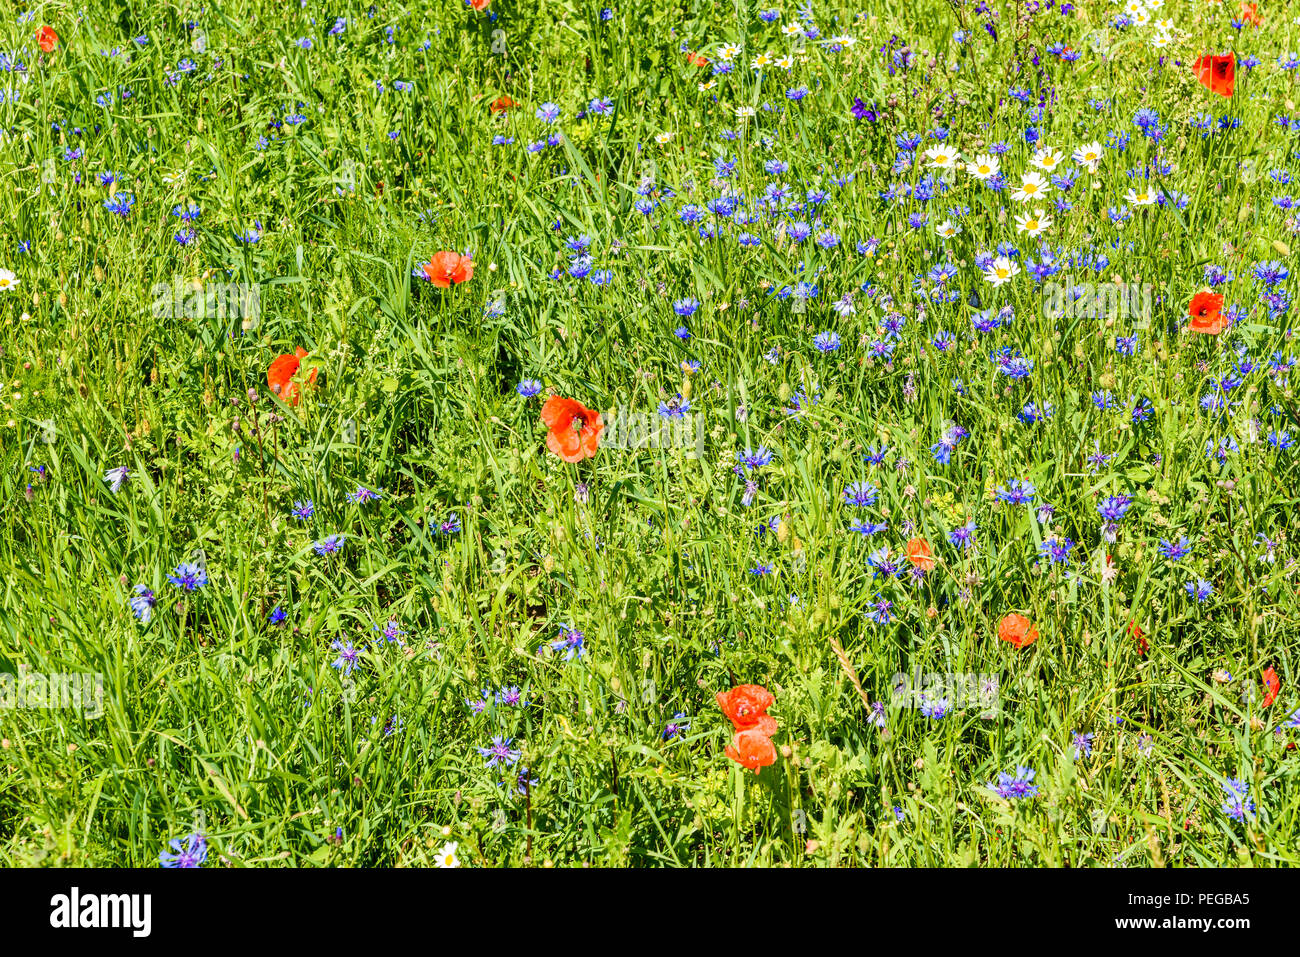 Prairie de fleurs de bleuet (Centaurea cyanus), le pavot (Papaver) et oxeye daisy (Leucanthemum vulgare). Banque D'Images